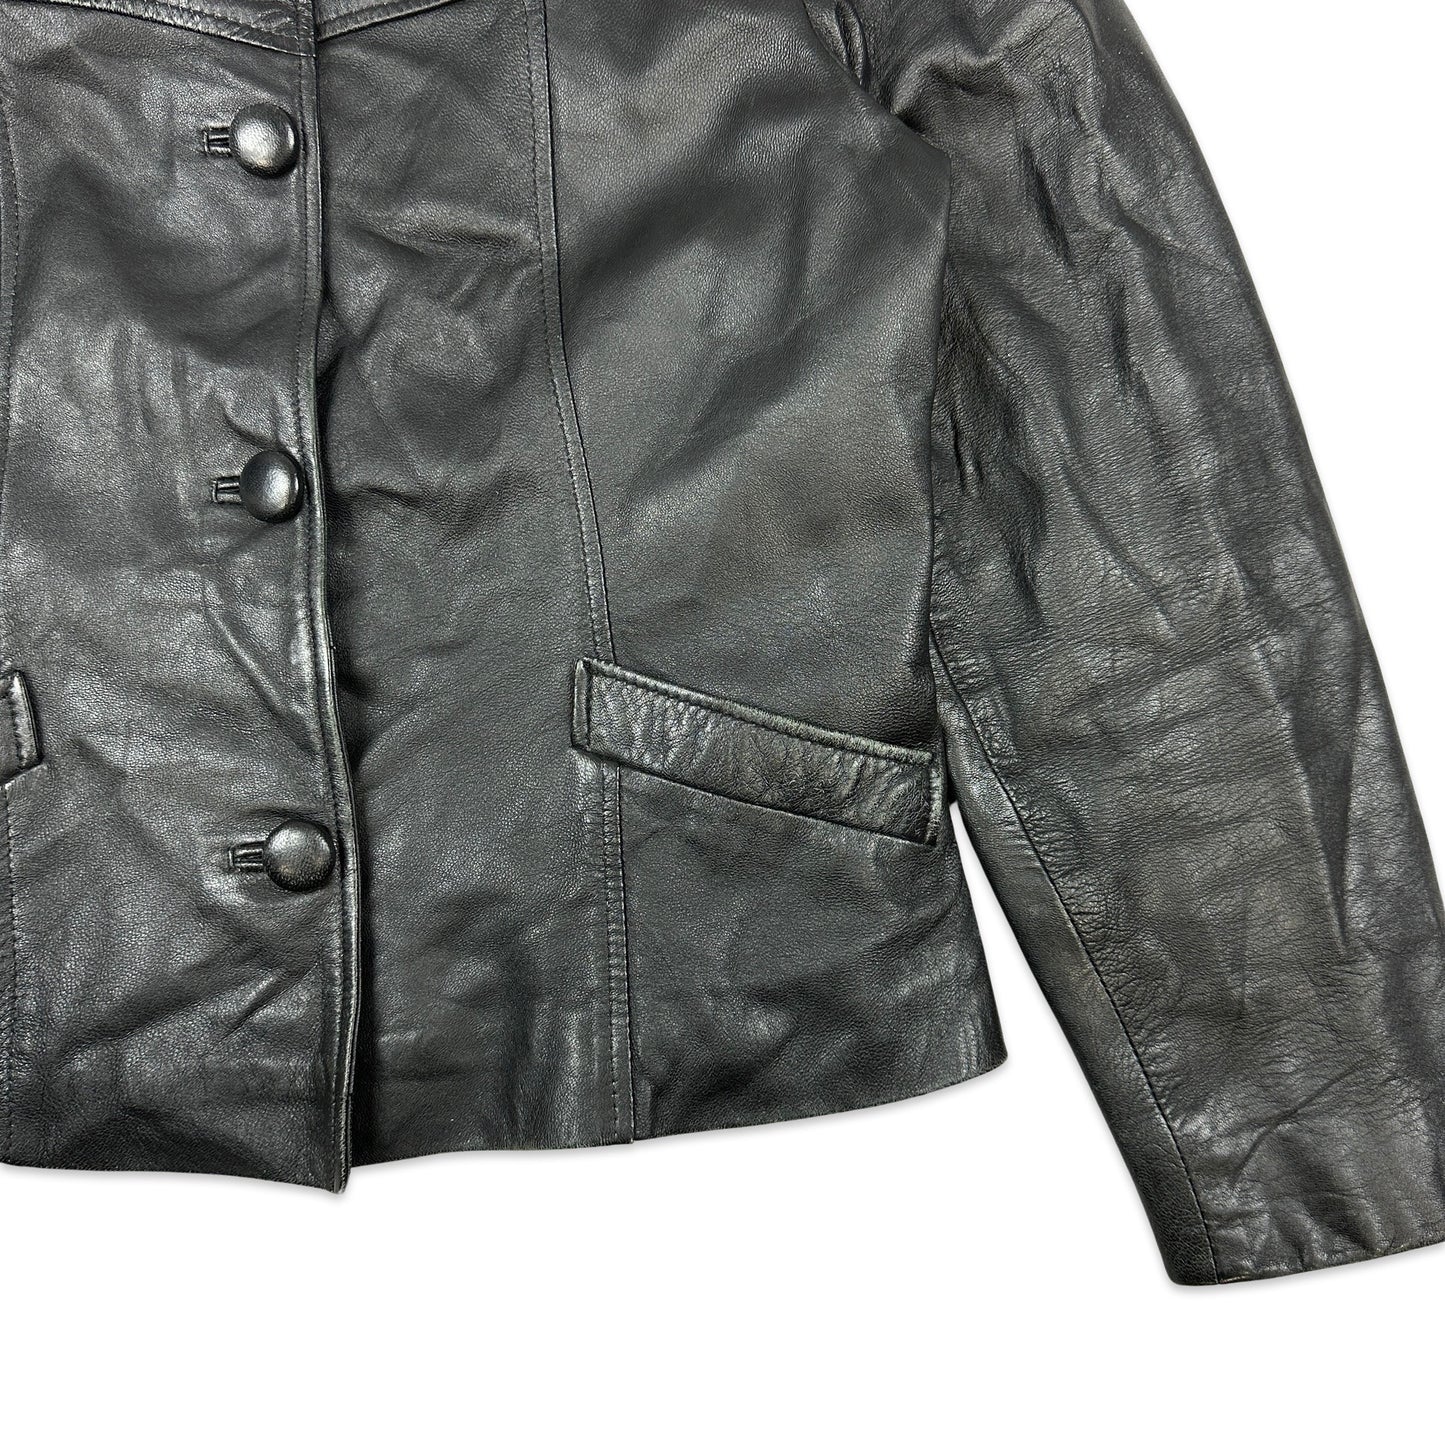 SVintage Black Leather Jacket 12